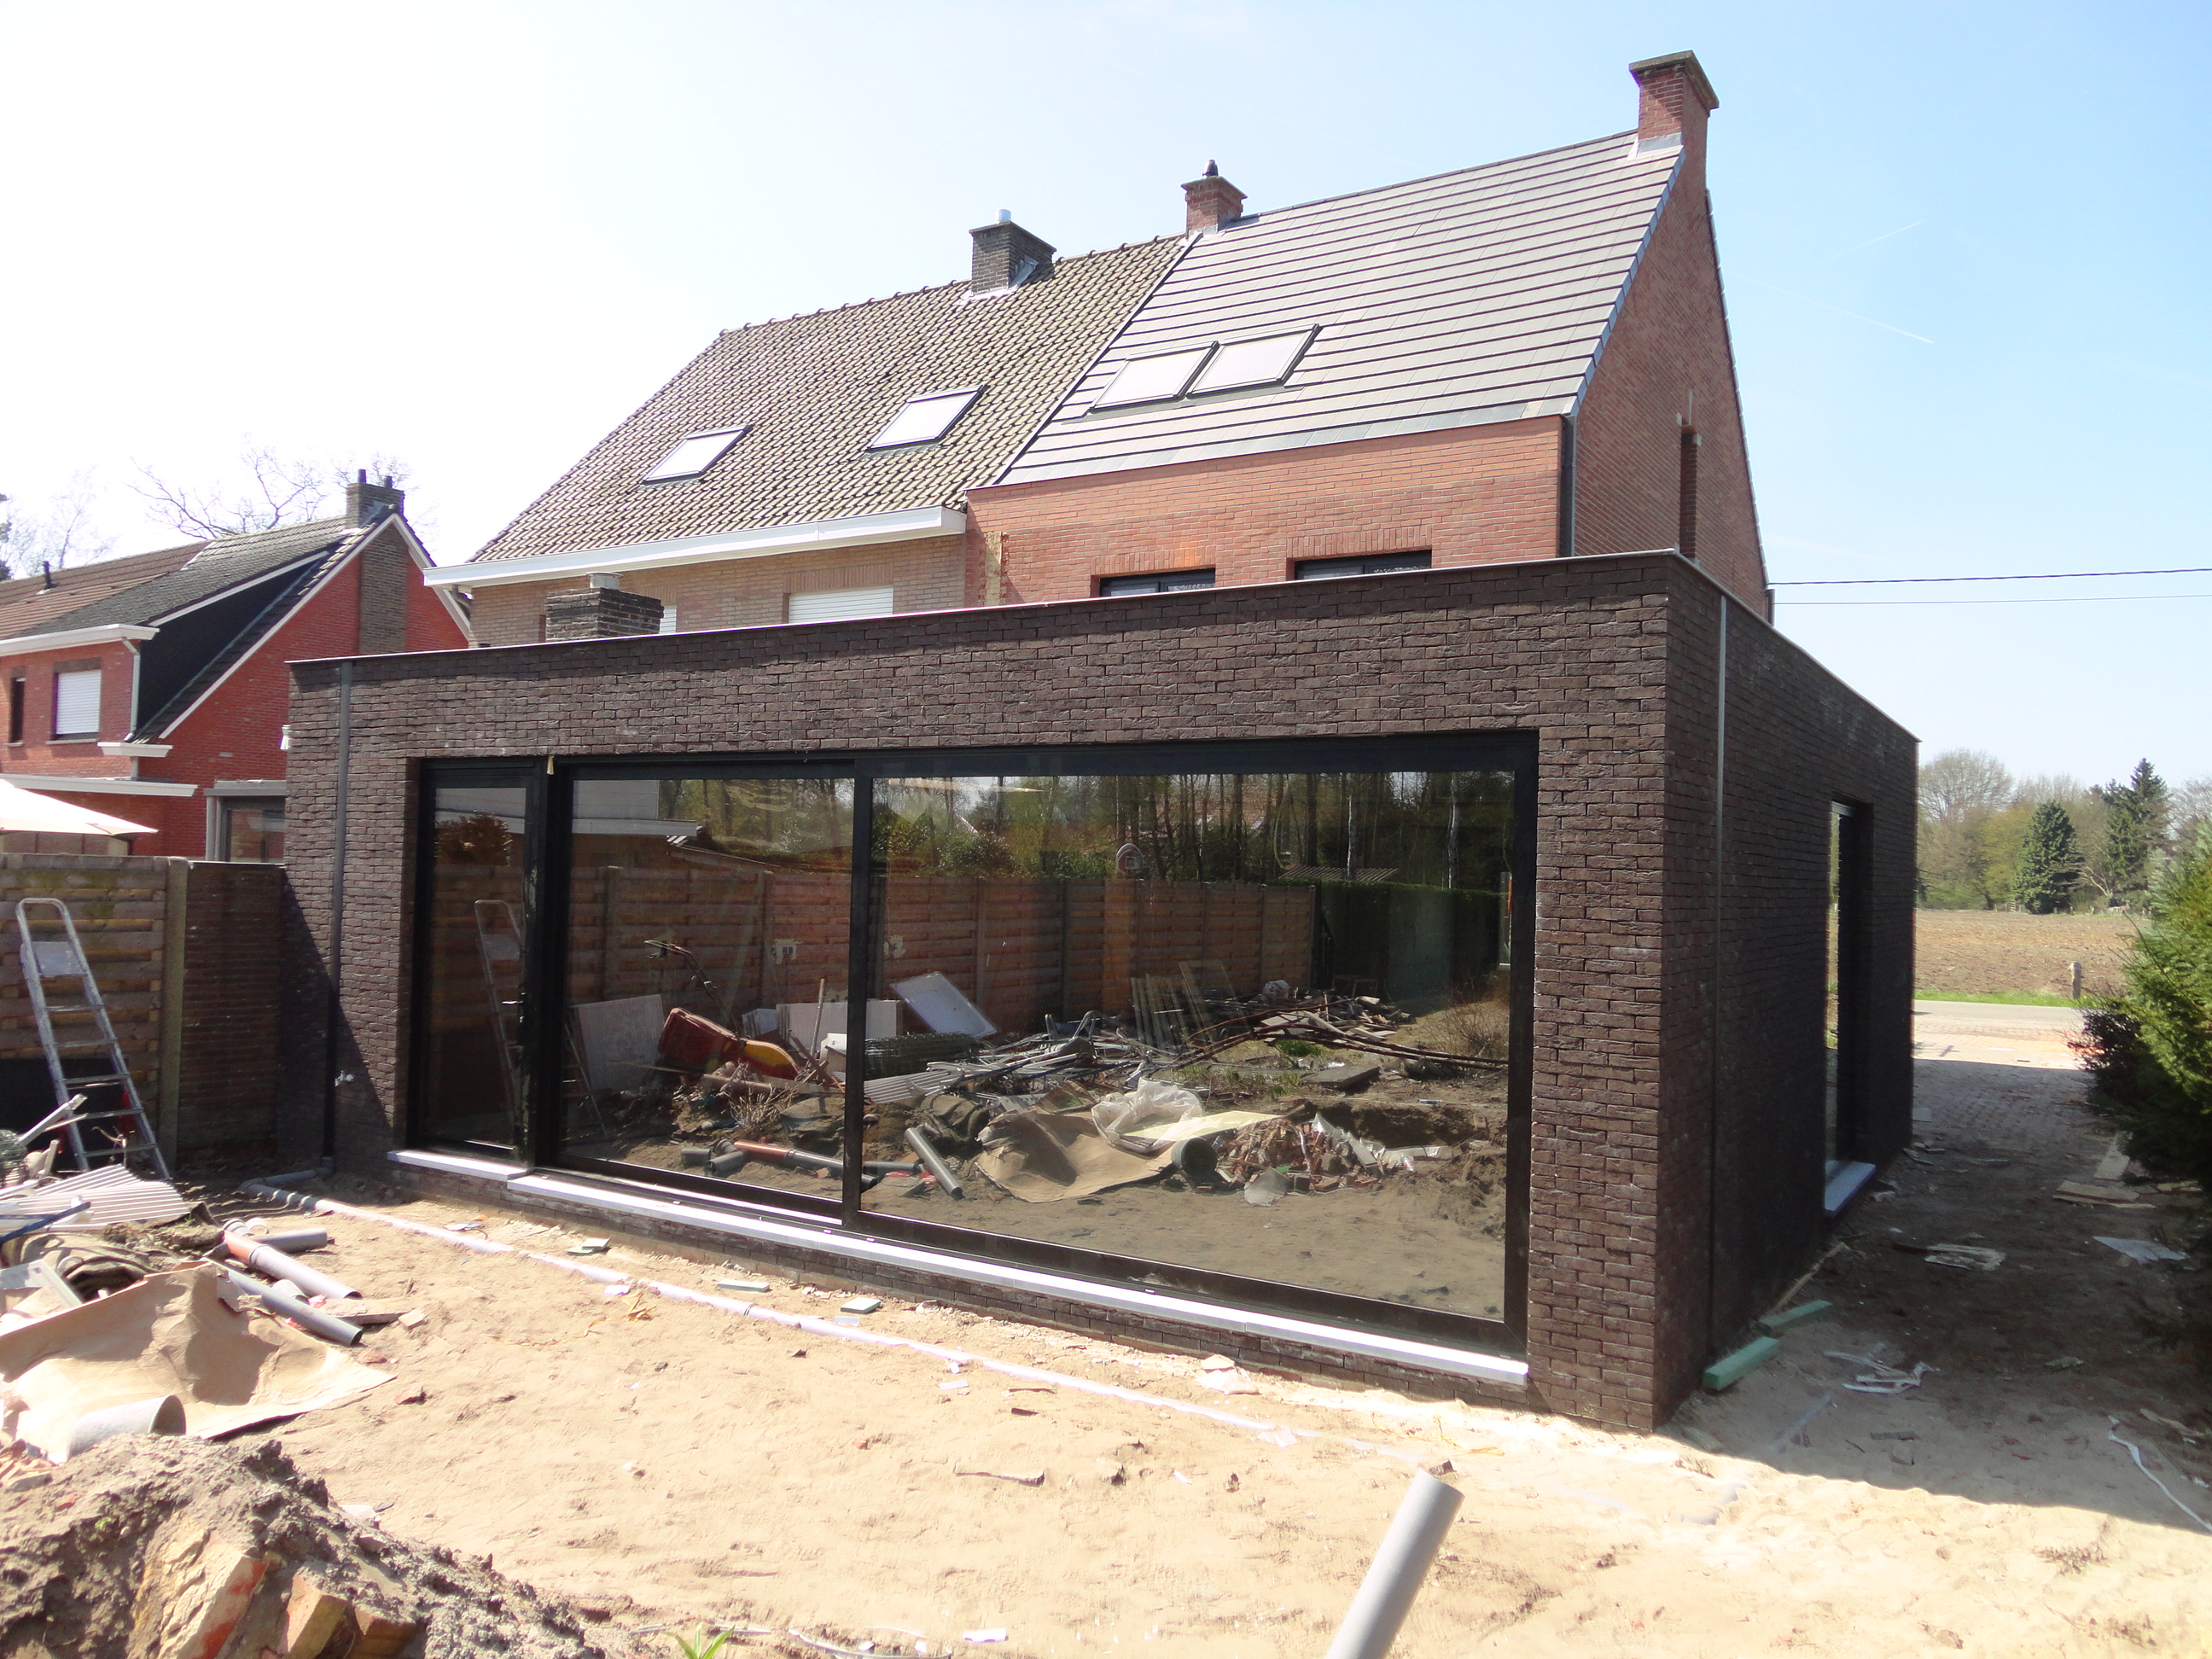 Dit huis werd opengesteld op de Vlaamse Renovatiedag. Wouter: "ik ontwerp van binnenuit naar de gevel toe"